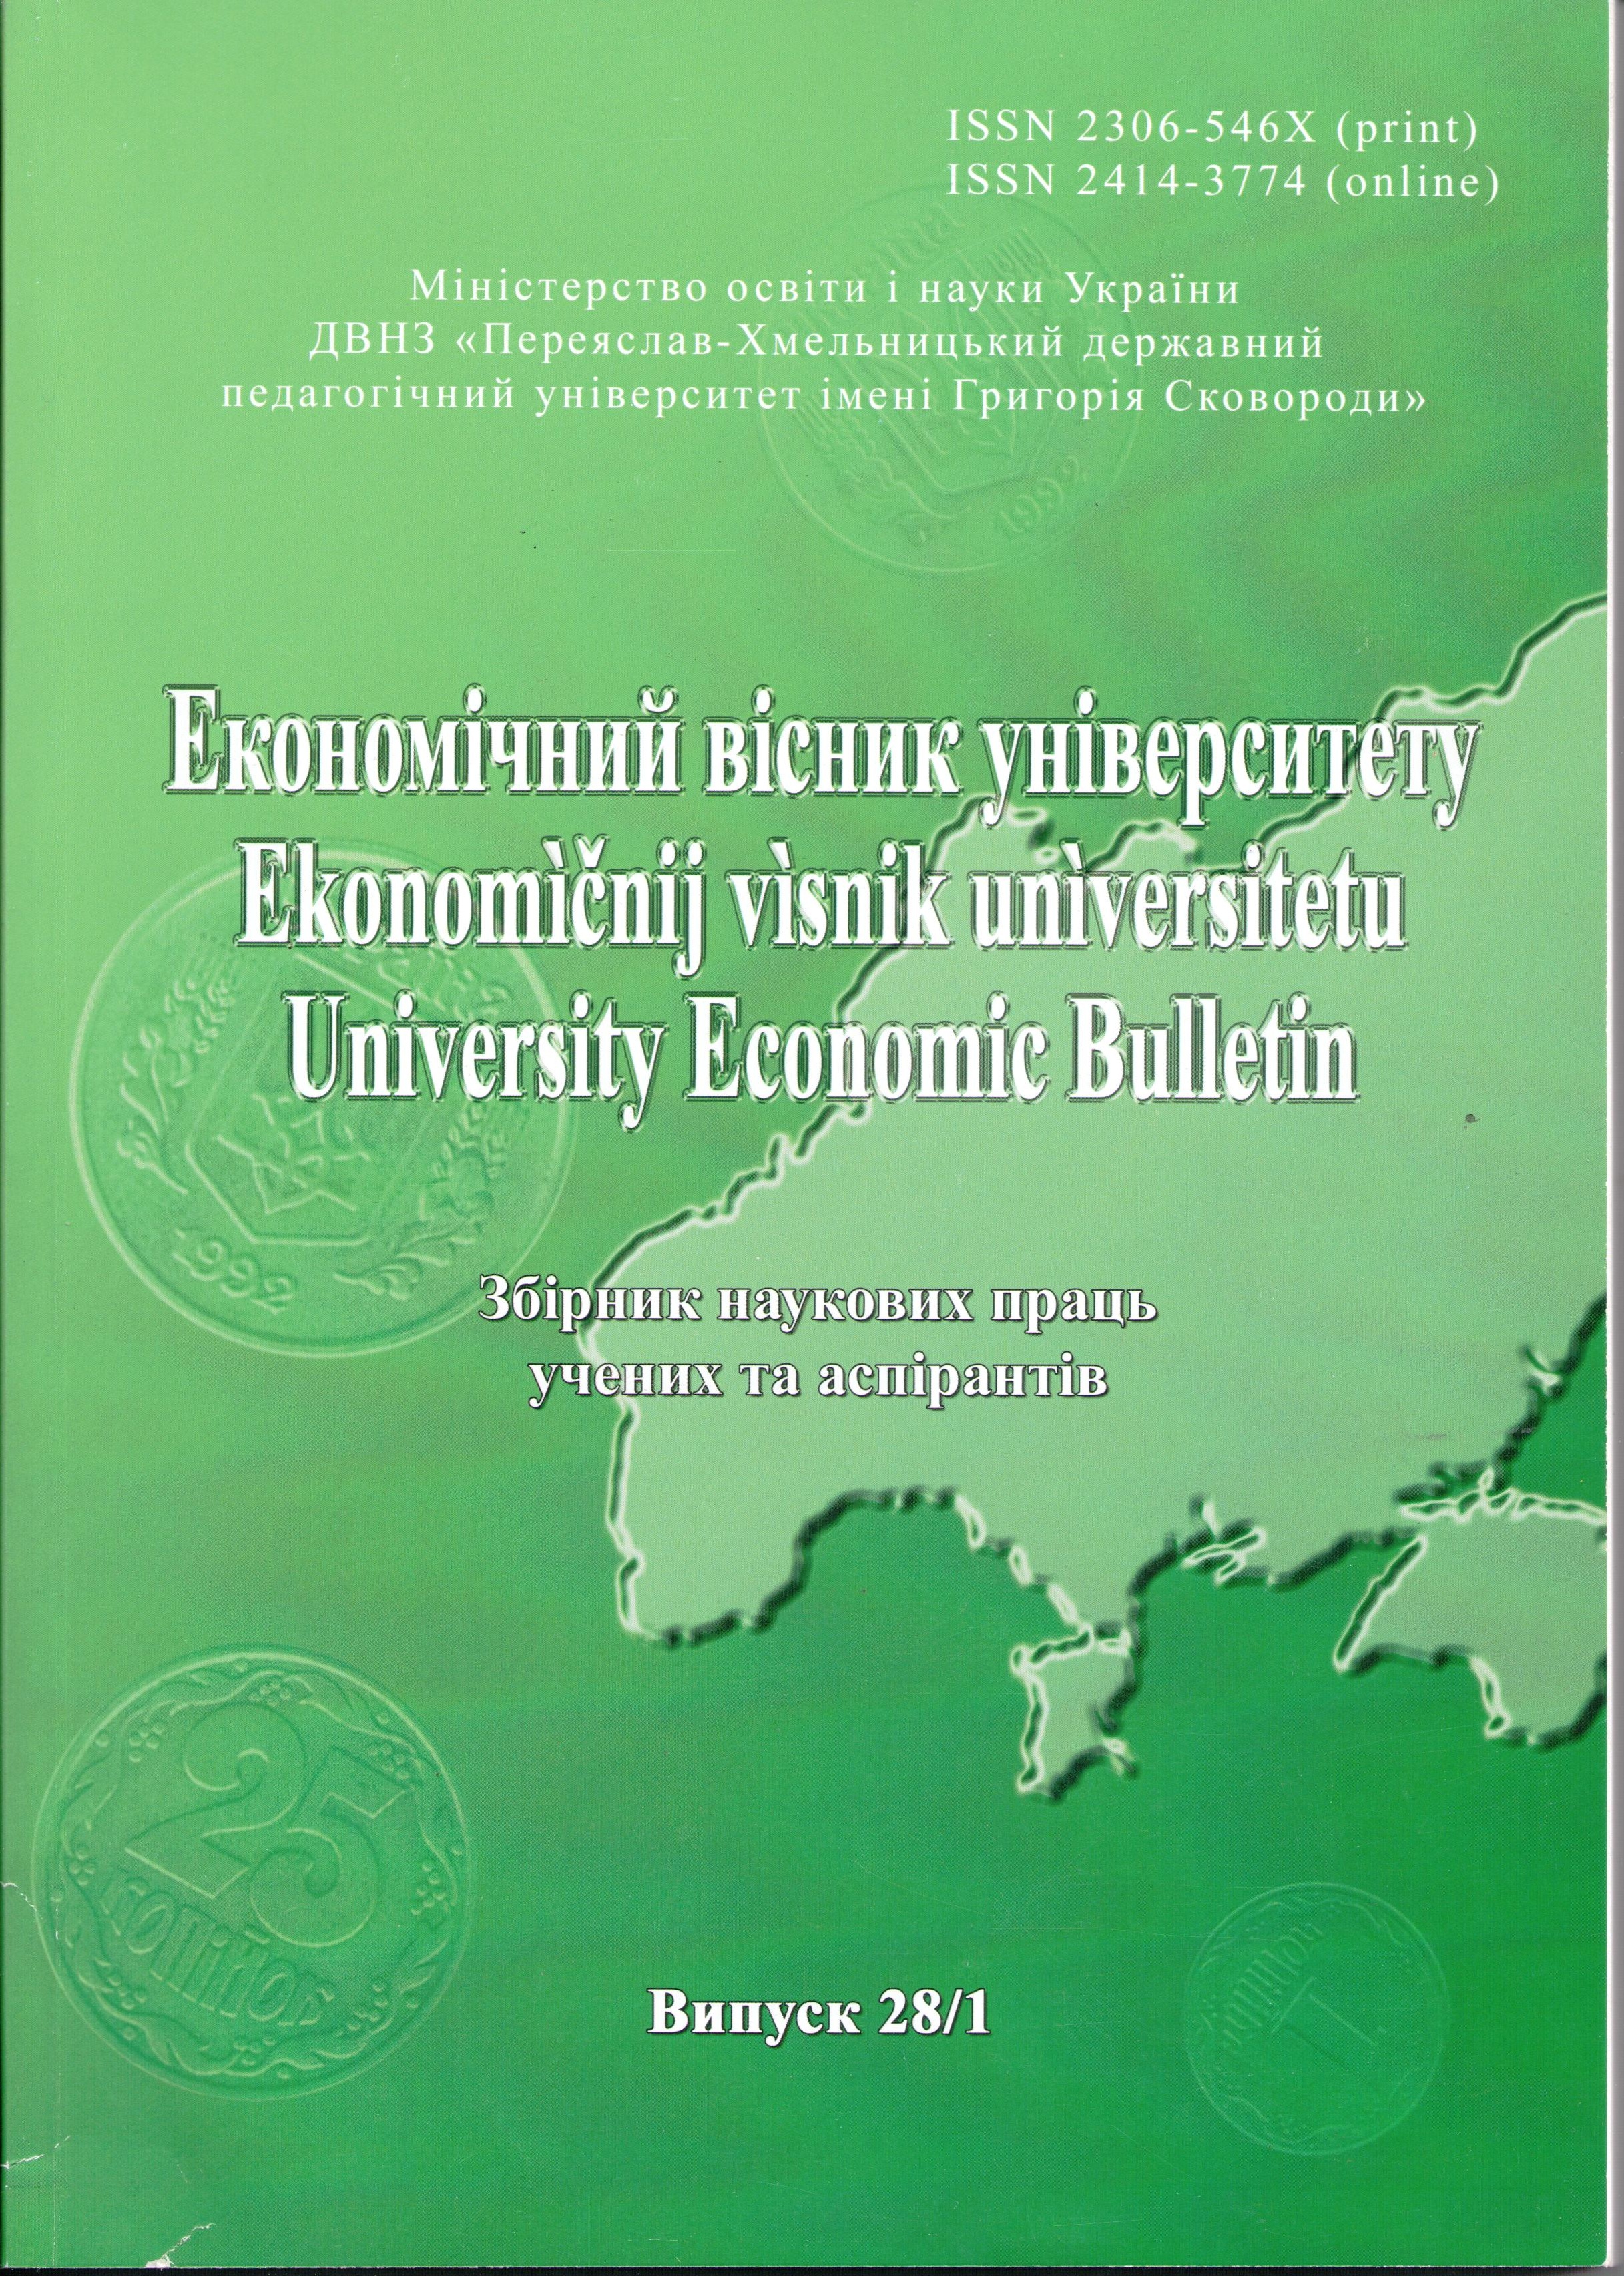 Формування видатків бюджету у системі соціально-економічного розвитку країни